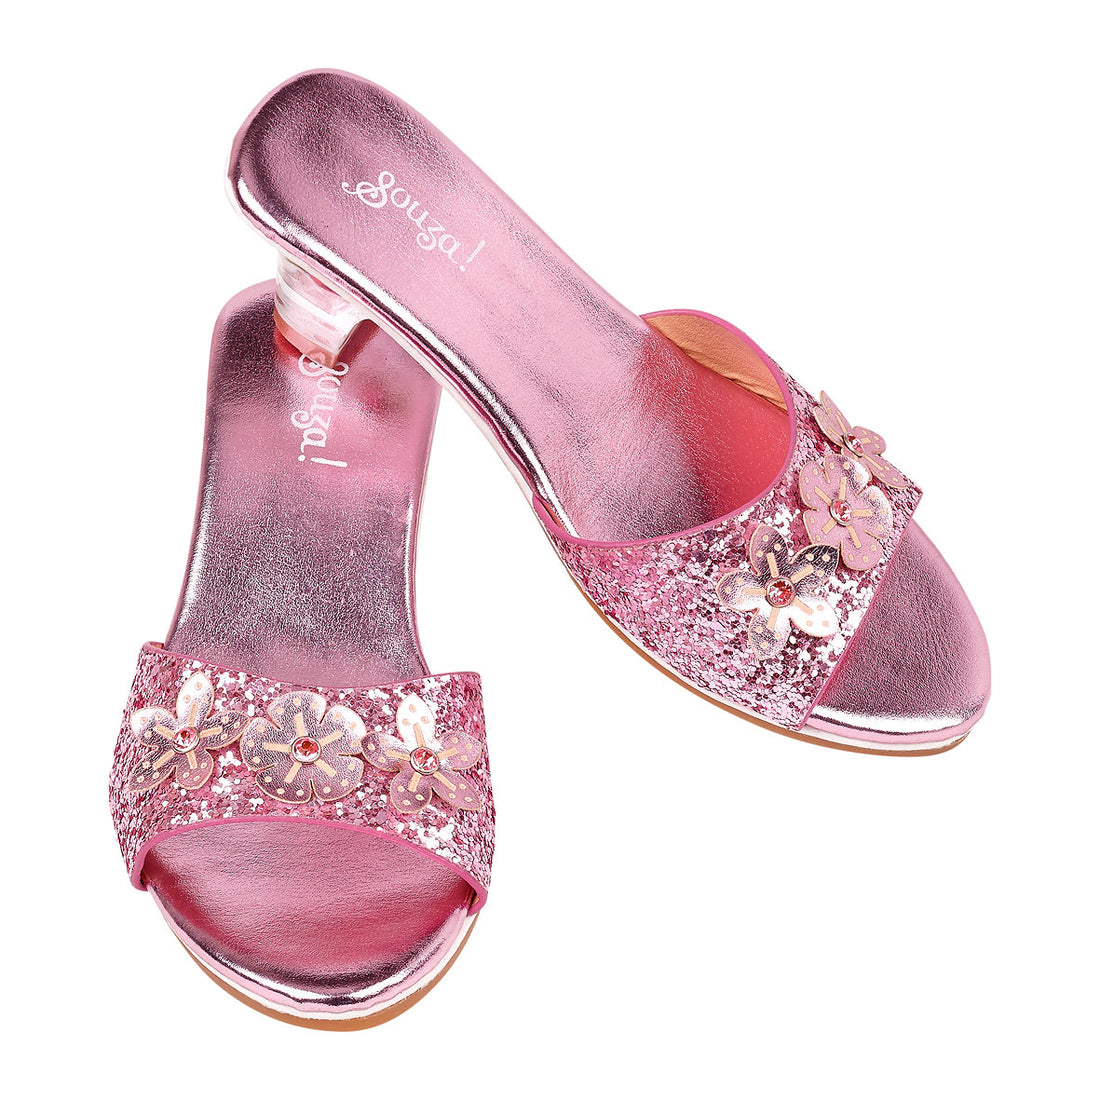 souza-slipper-h-heel-mariona-pink-metallic-souz-105000-